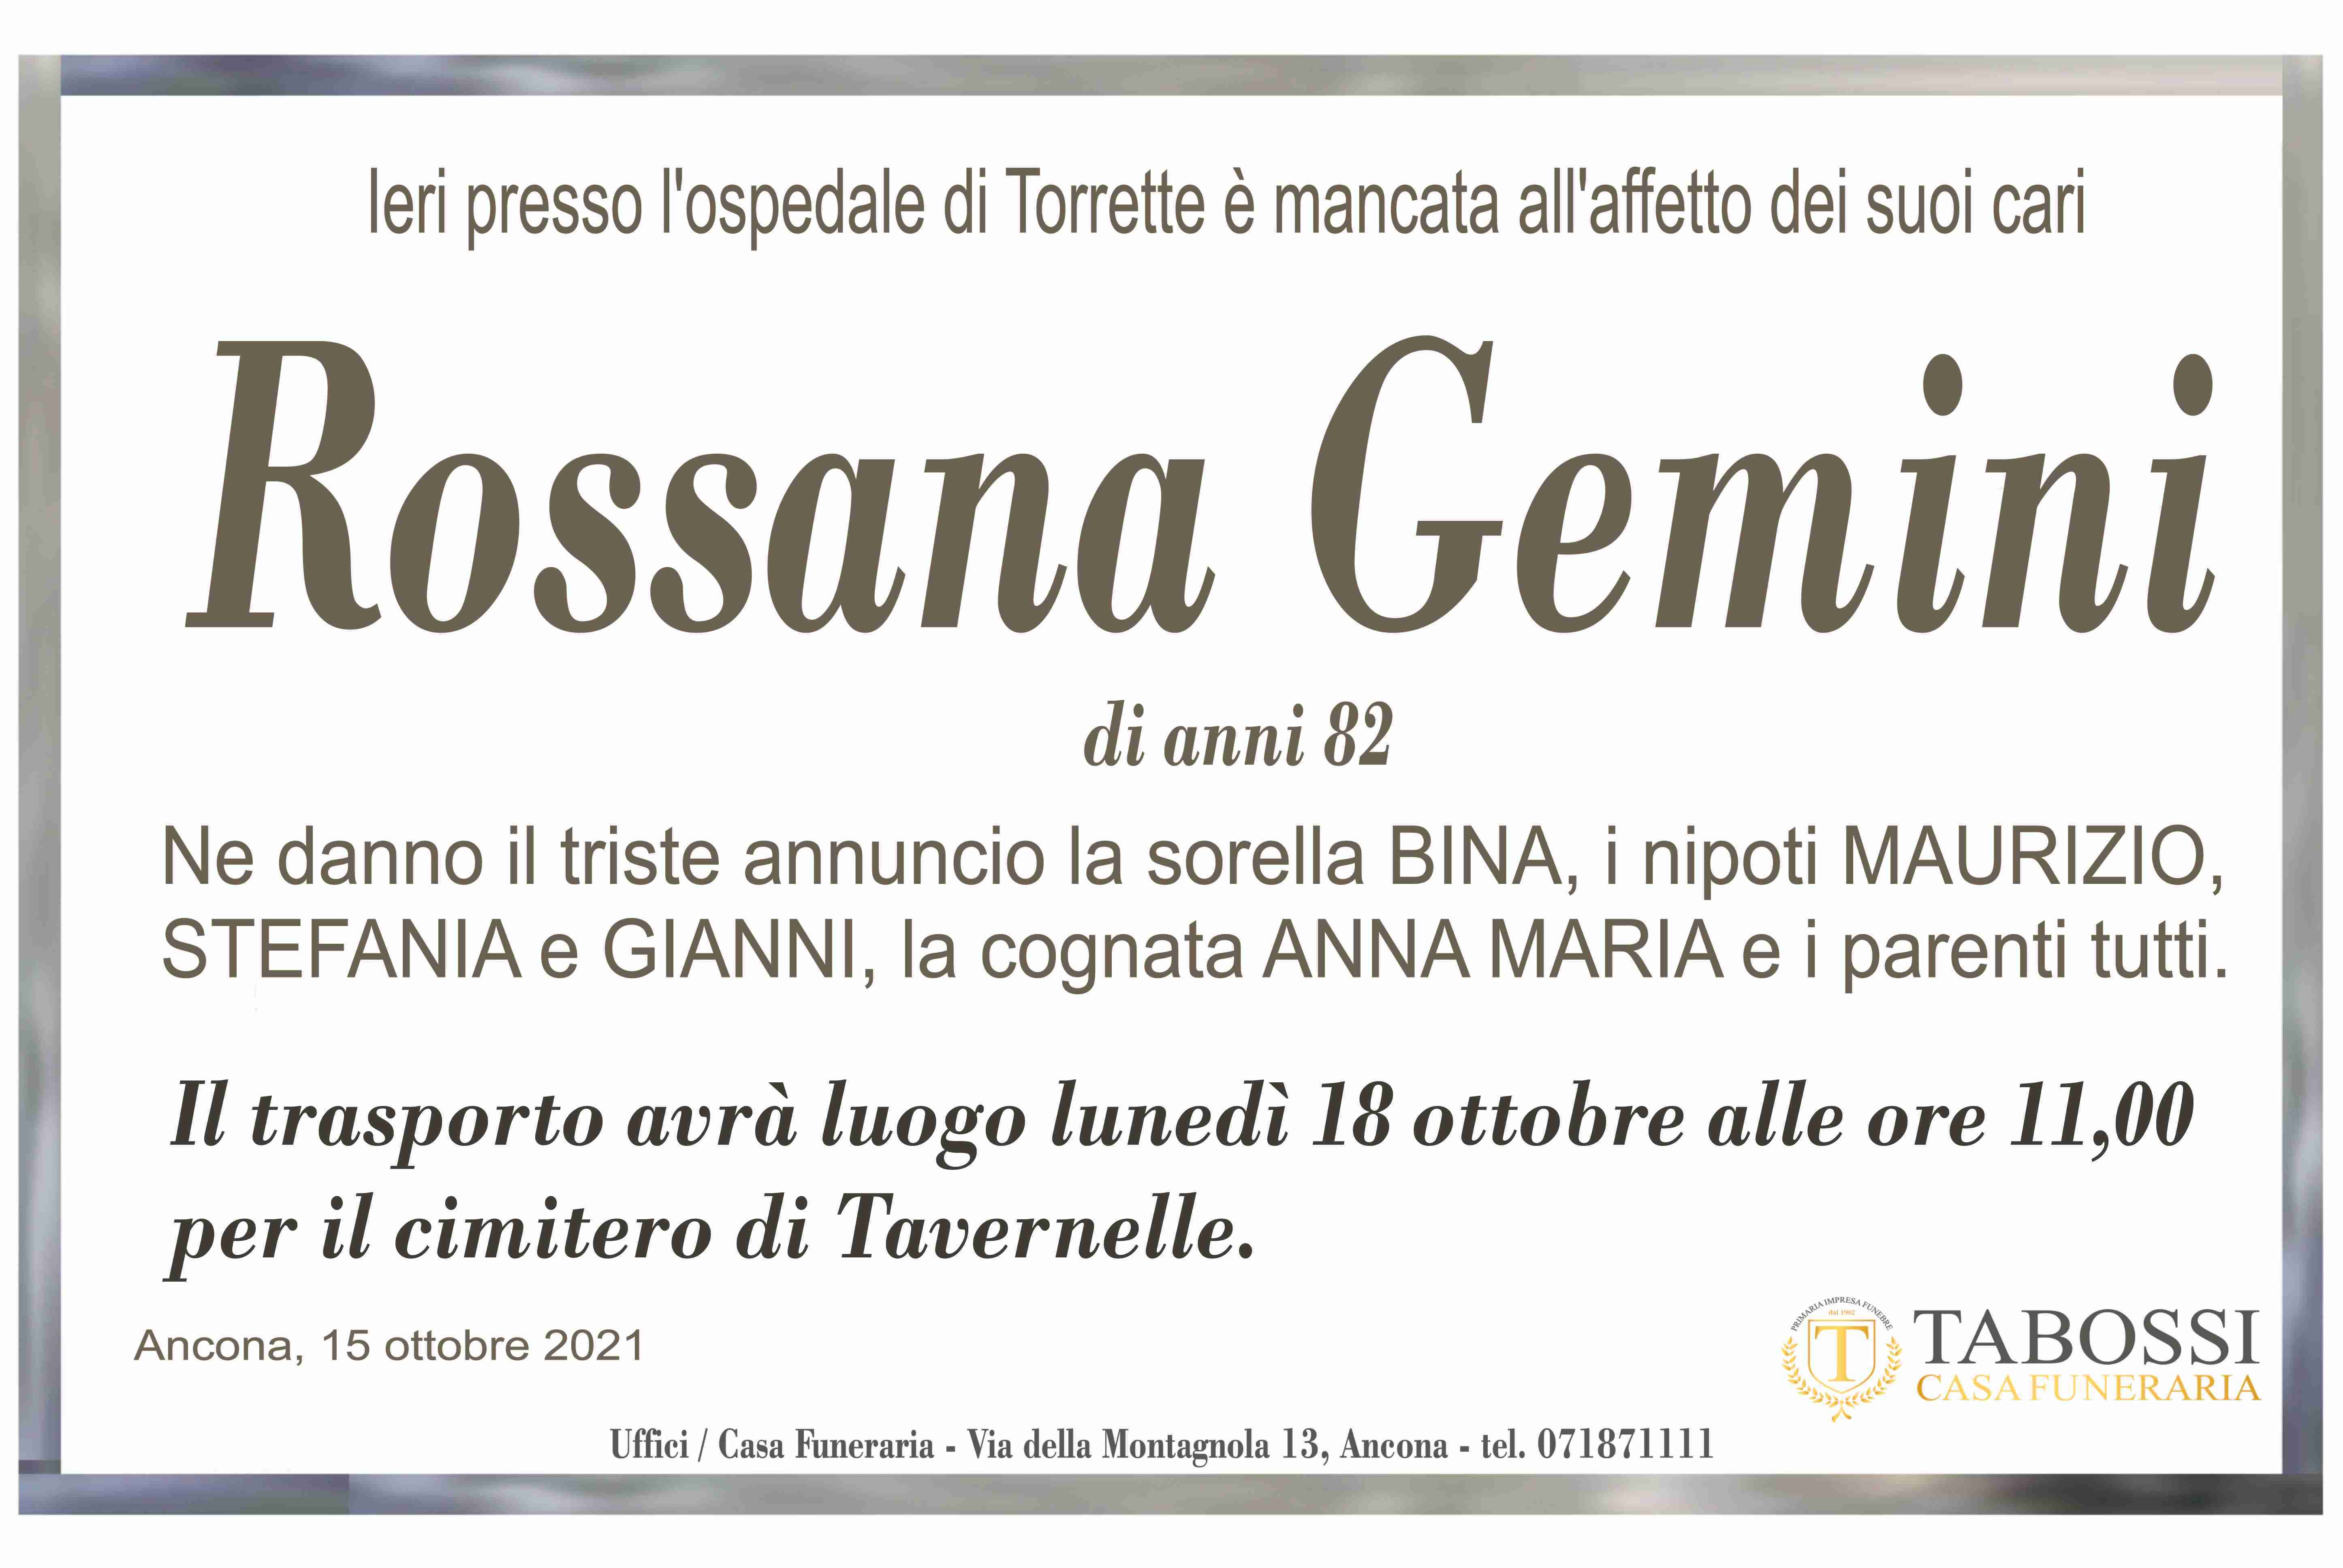 Rossana Gemini